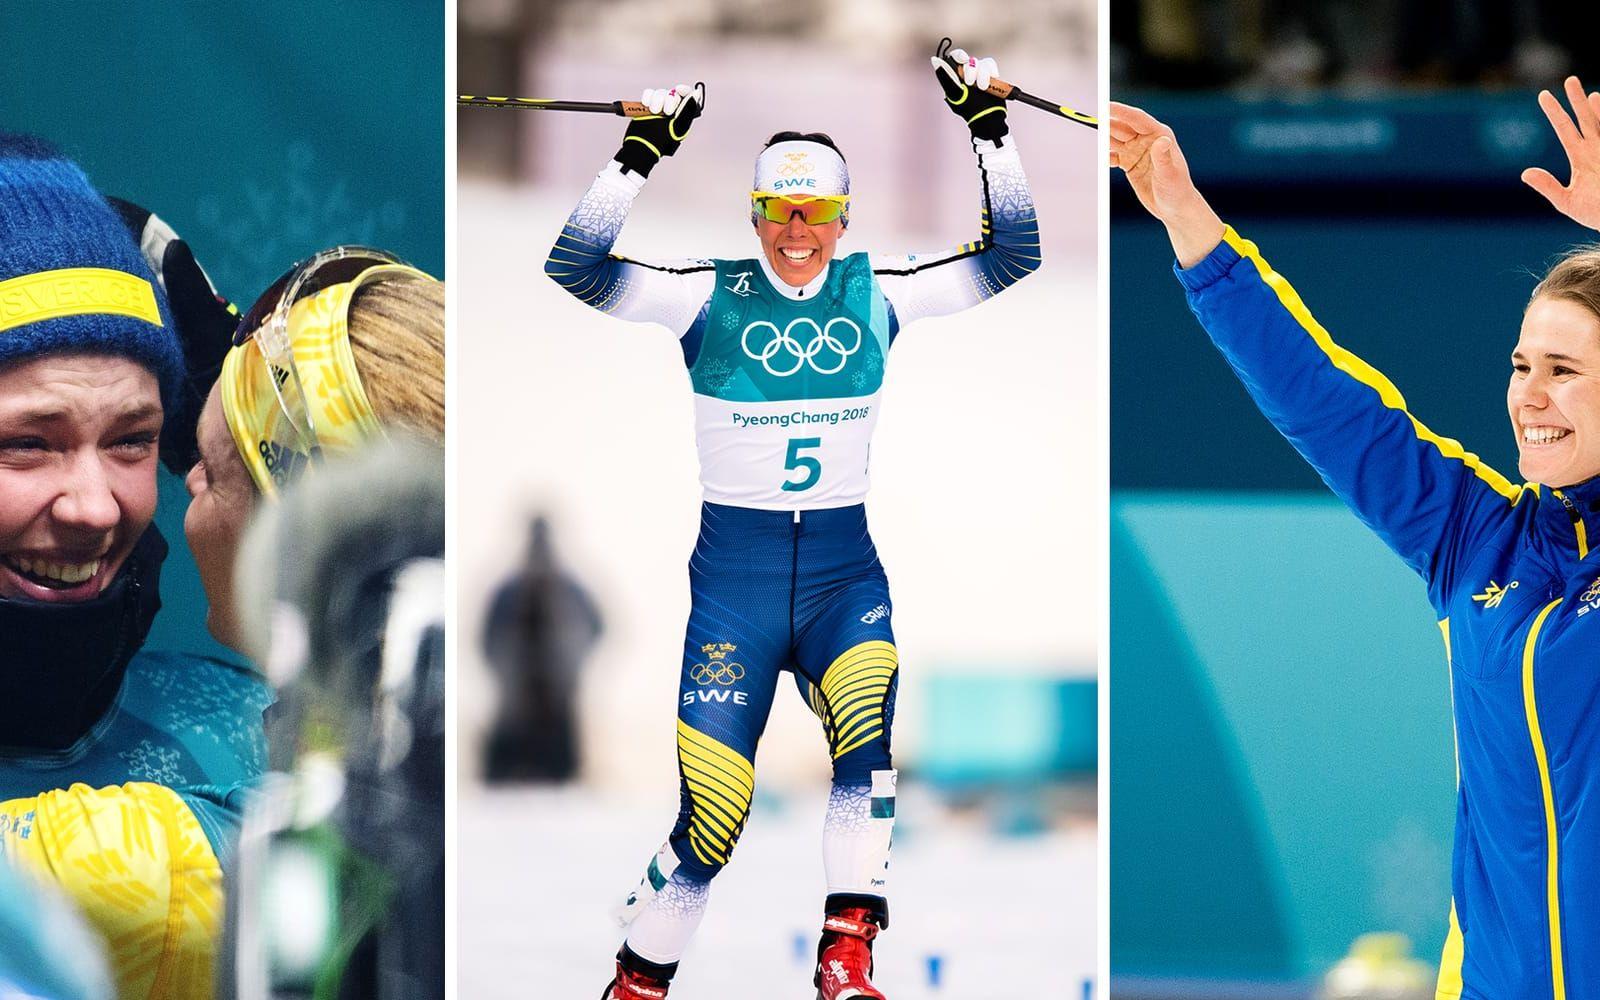 Den svenska truppen lämnar OS med 14 medaljer - kolla i bildspelet för att se alla svenska medaljörer. Bild: Bildbyrån